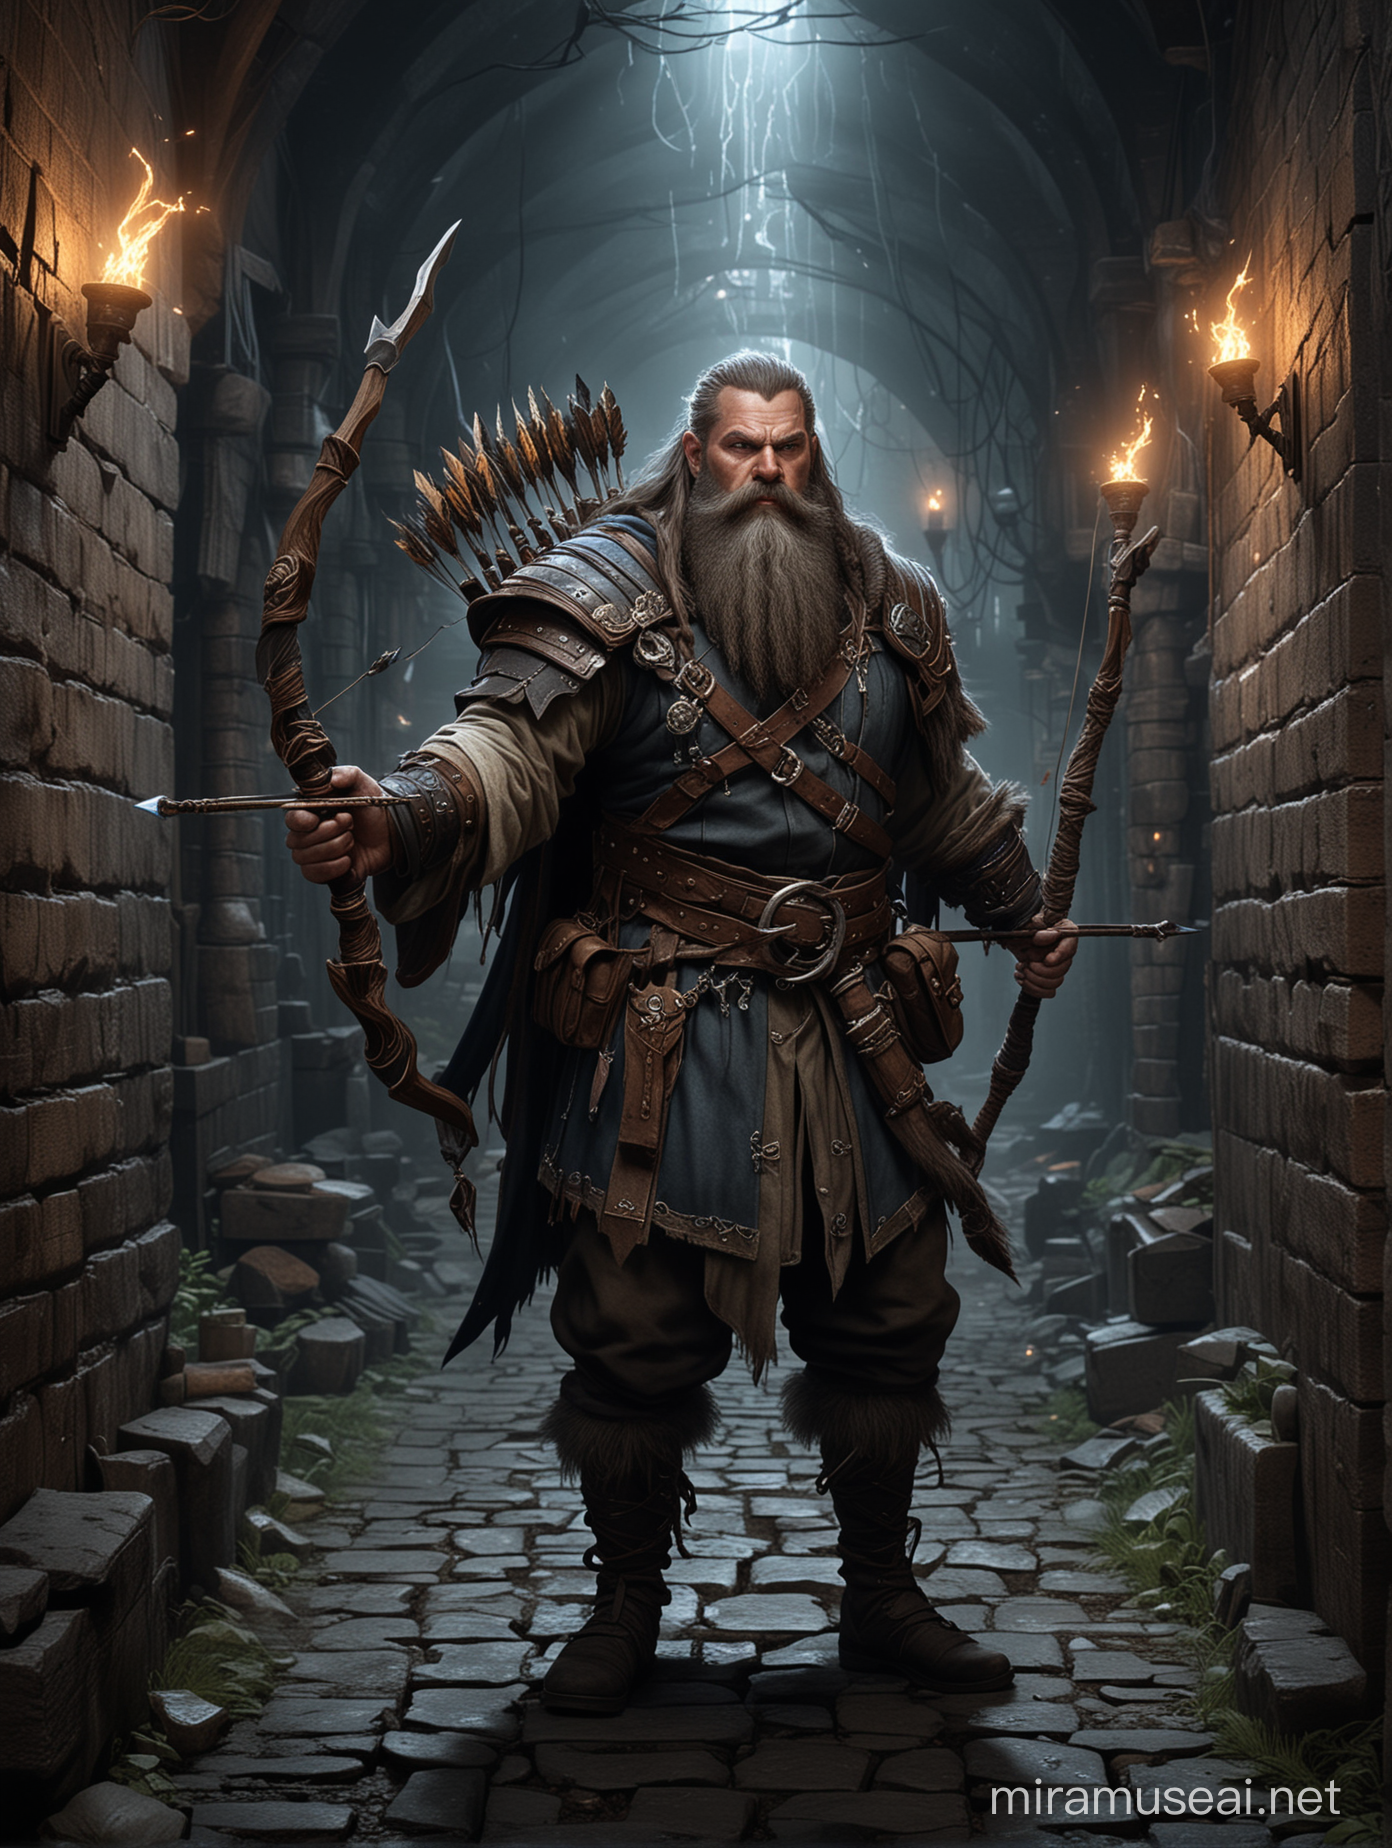 Intense Battle Dwarf Arcane Archer Defending Against Assassins in Dark Alley